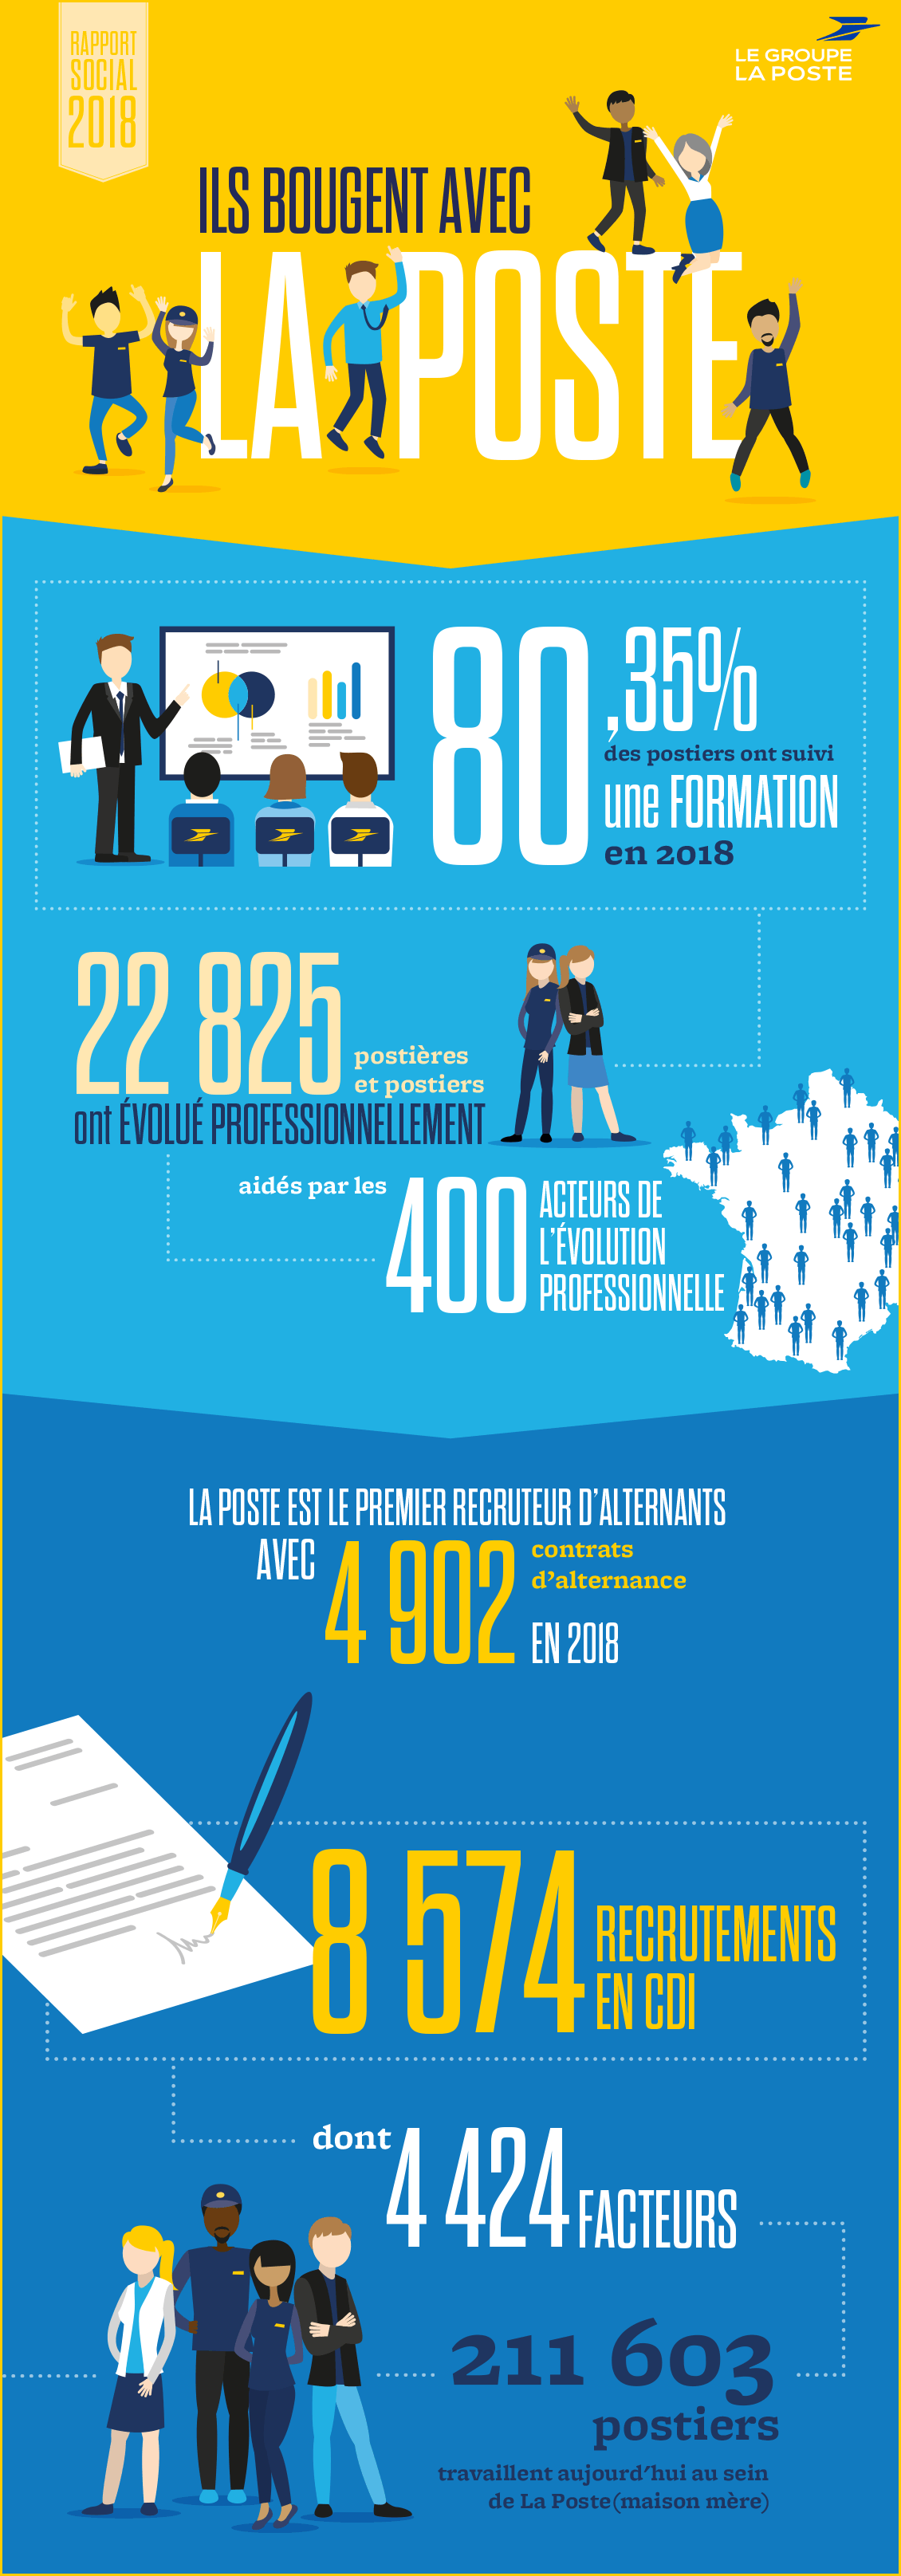 Infographie avec les chiffres clés du Rapport social 2018 du Groupe La Poste sur le volet « Recrutement et formation ».